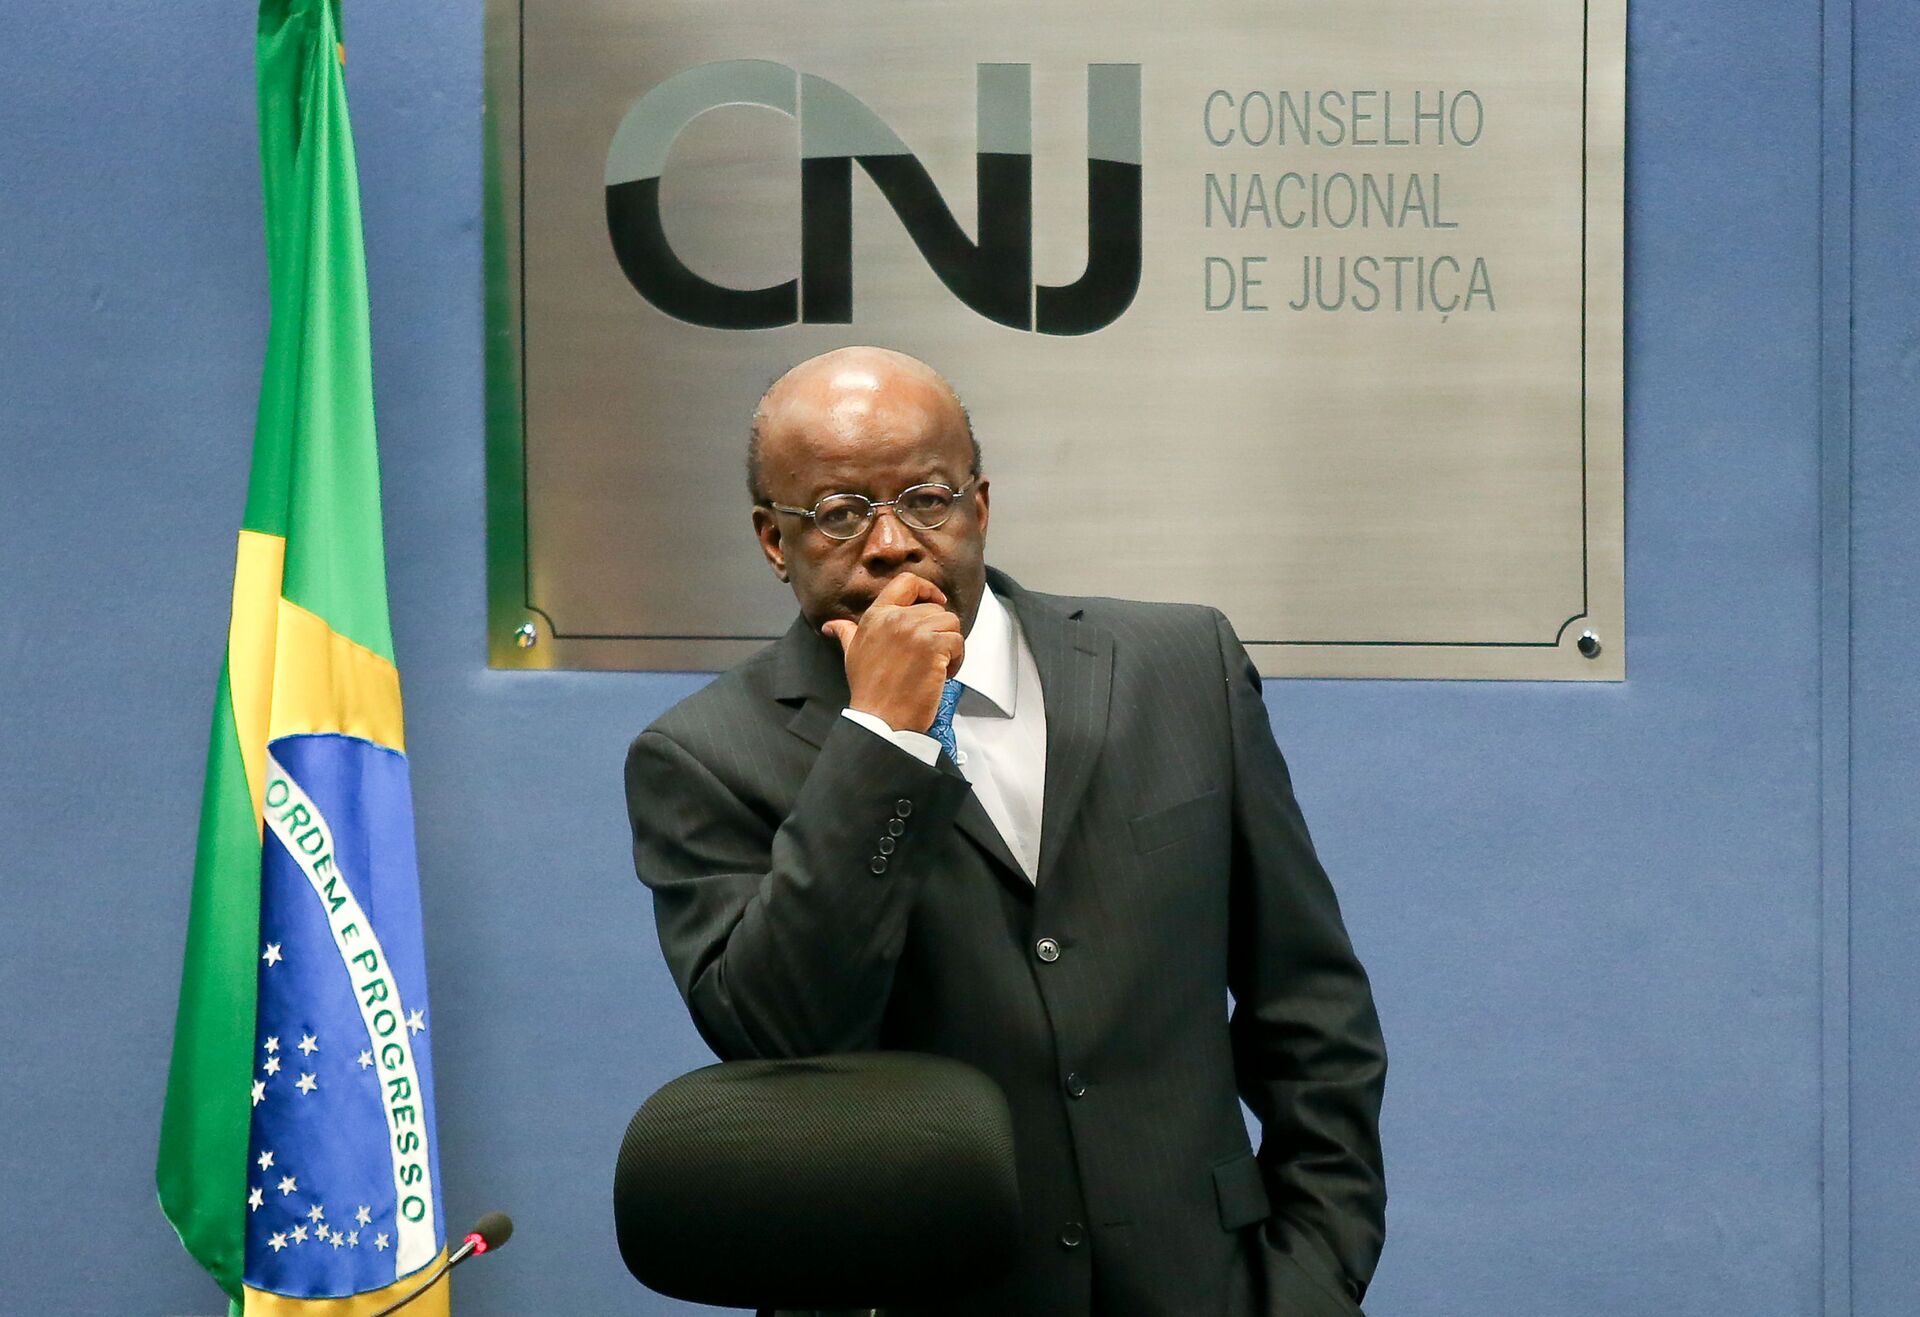  Ministro Joaquim Barbosa preside sessão do CNJ (Conselho Nacional de Justiça), Brasília, 3 de junho de 2014 - Sputnik Brasil, 1920, 07.01.2022